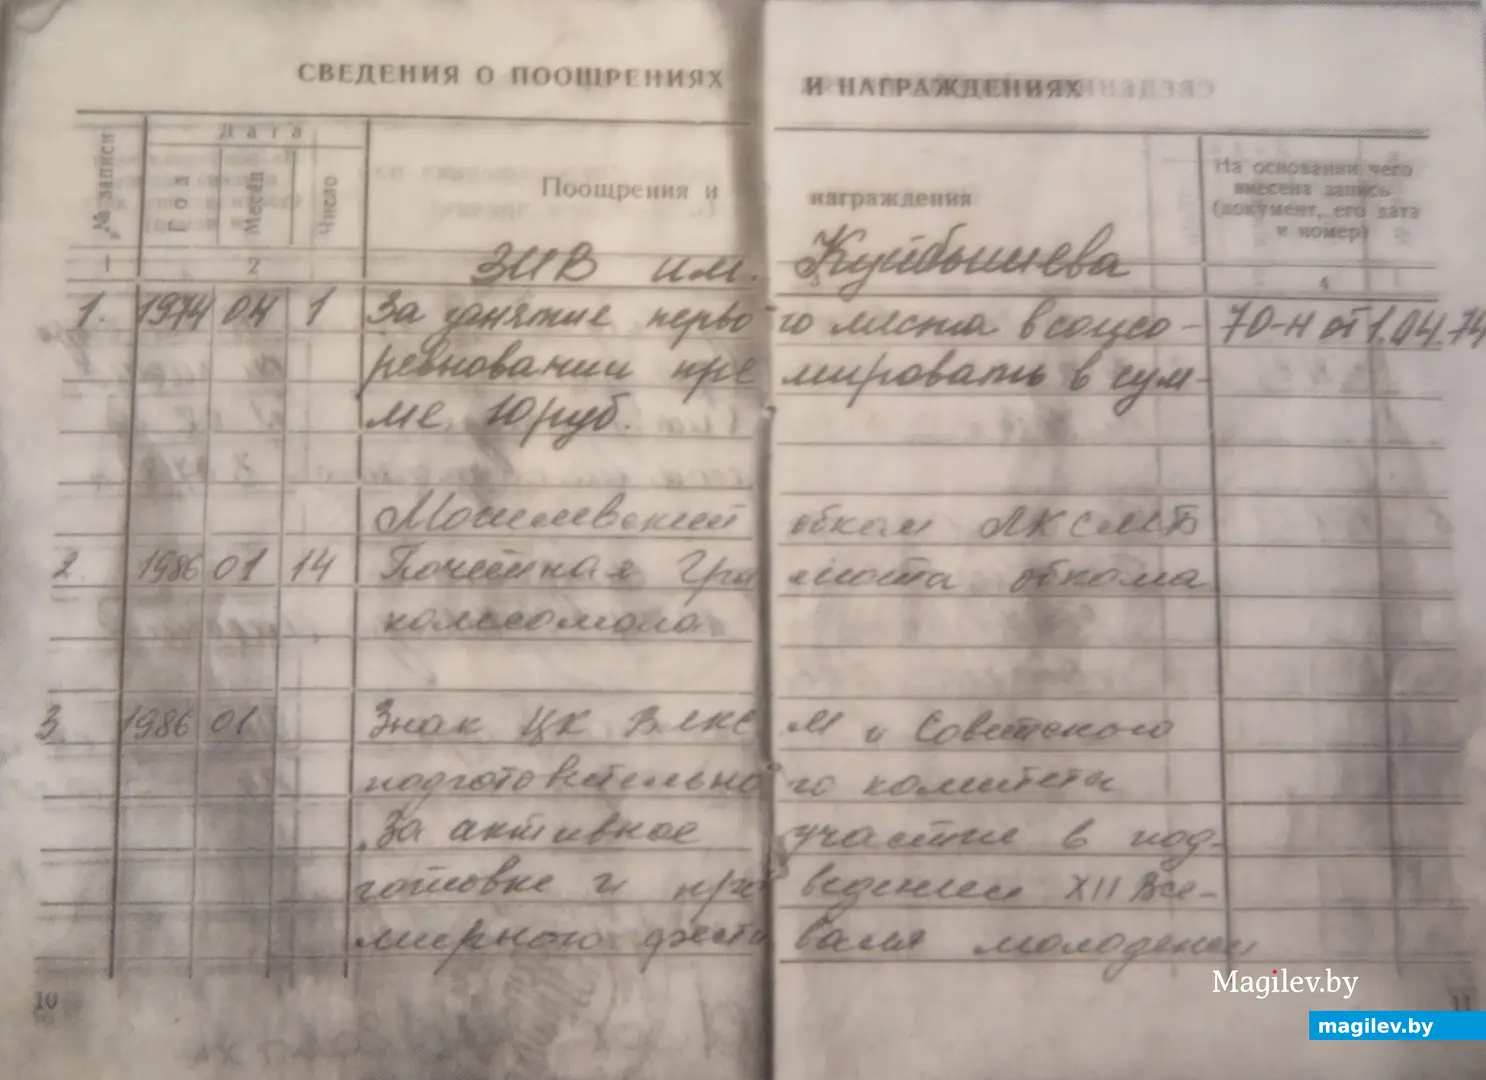 В трудовой книжке Олега Адамовича даже есть запись о тех самых 10 рублях, что ему выдали за 1 место на конкурсе молодых слесарей.